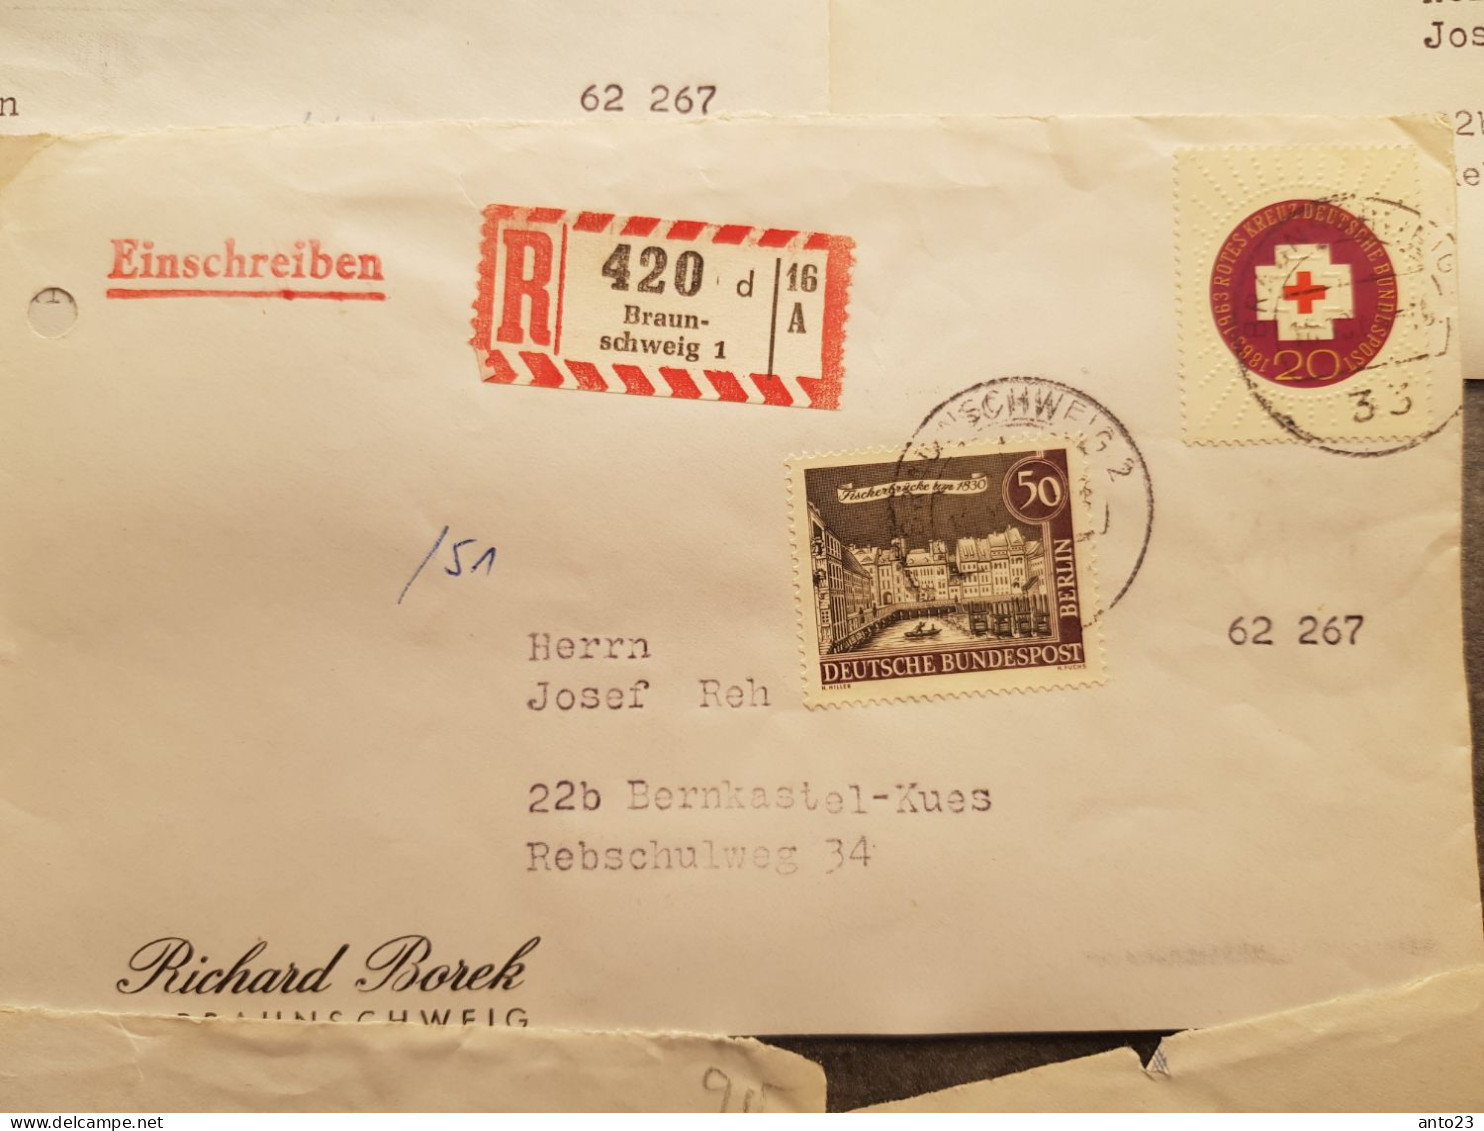 Satz von 9 Vorderseiten Einschreibebriefen aus Braunschweig mit Berliner Briefmarkenfrankatur